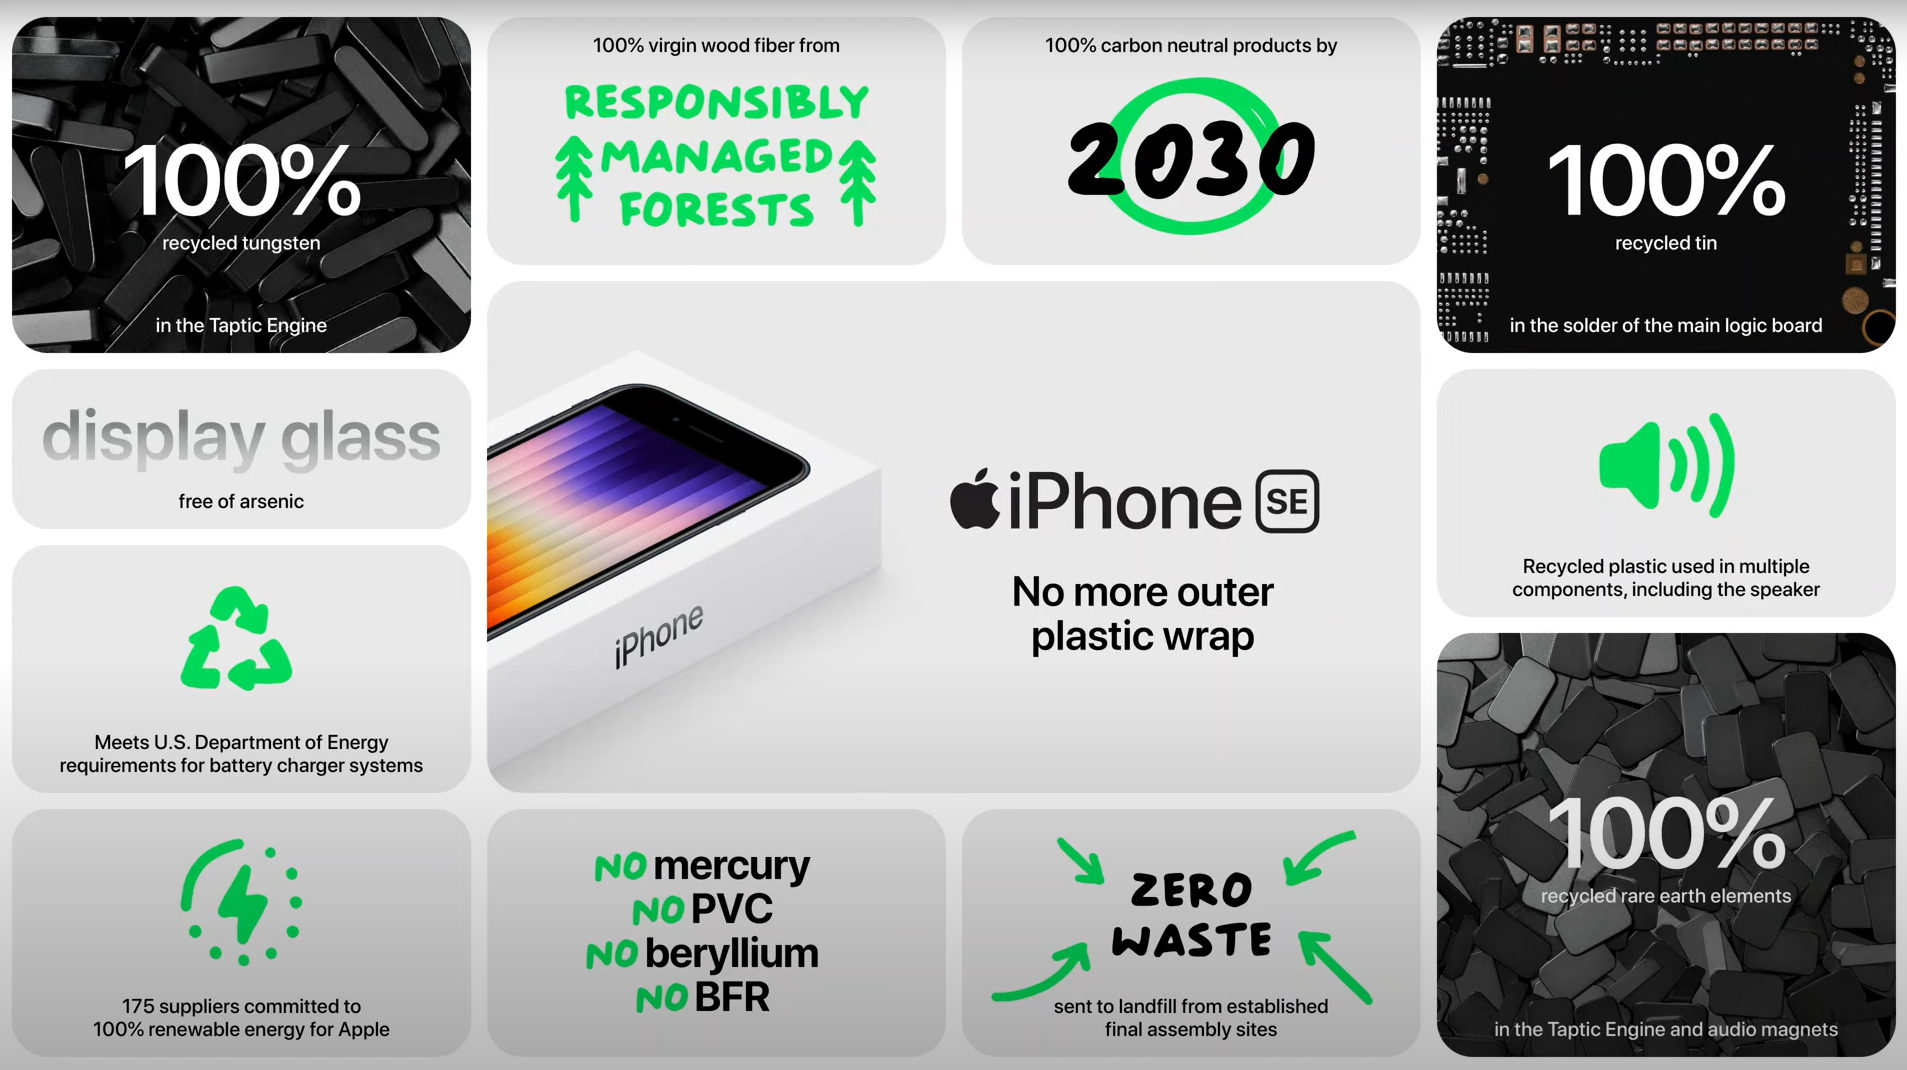 Képmutatás vagy felelősségvállalás? - Az Apple és a fenntarthatóság - 2. rész